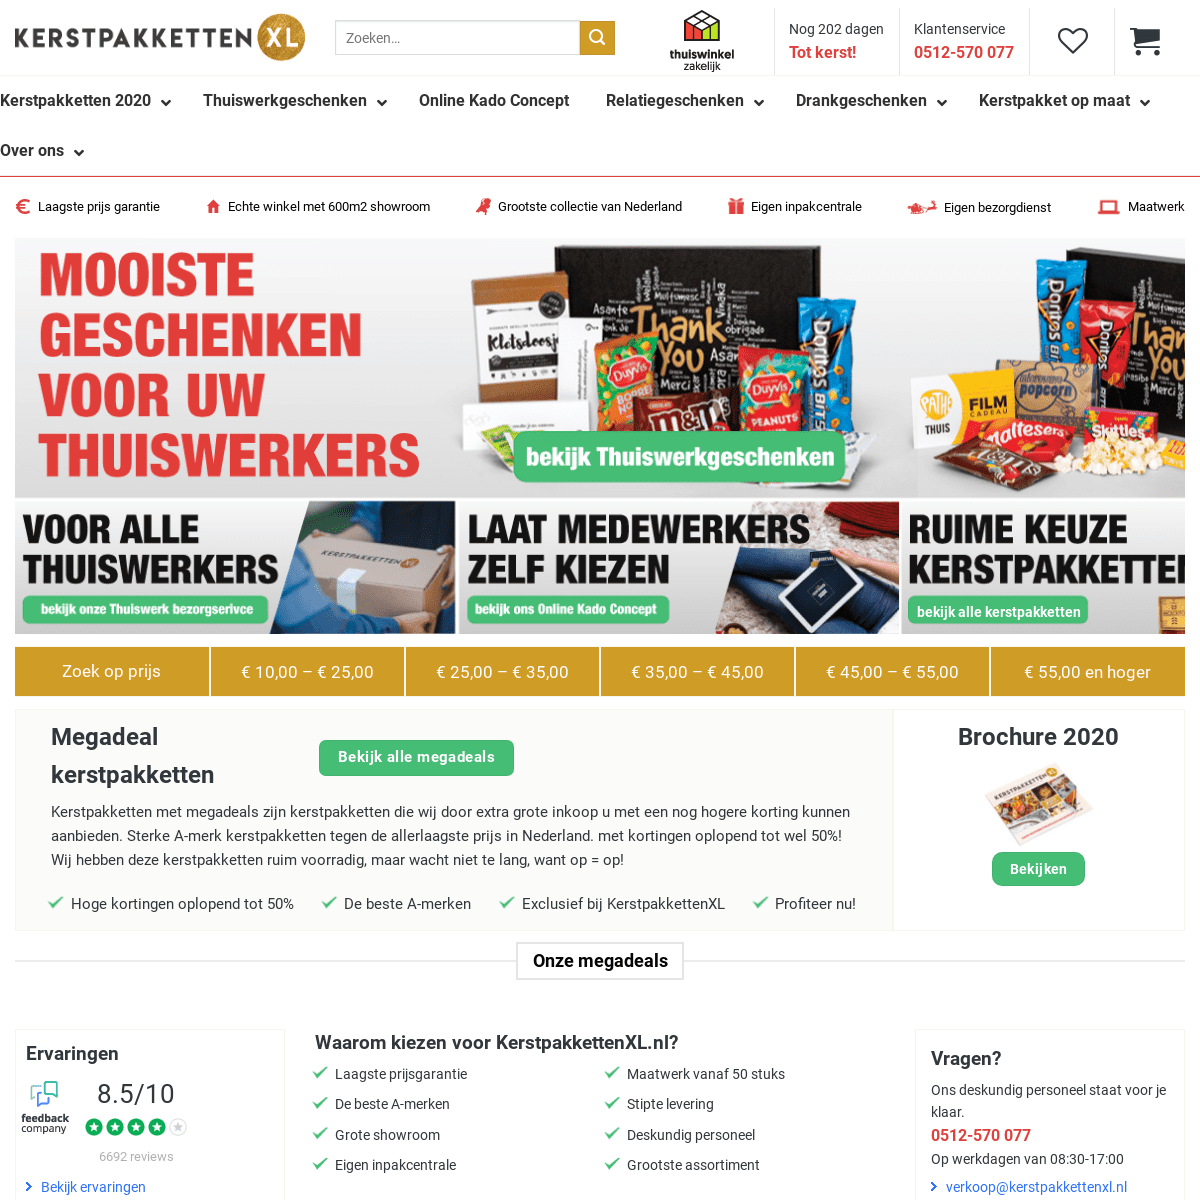 A complete backup of https://kerstpakkettenxl.nl